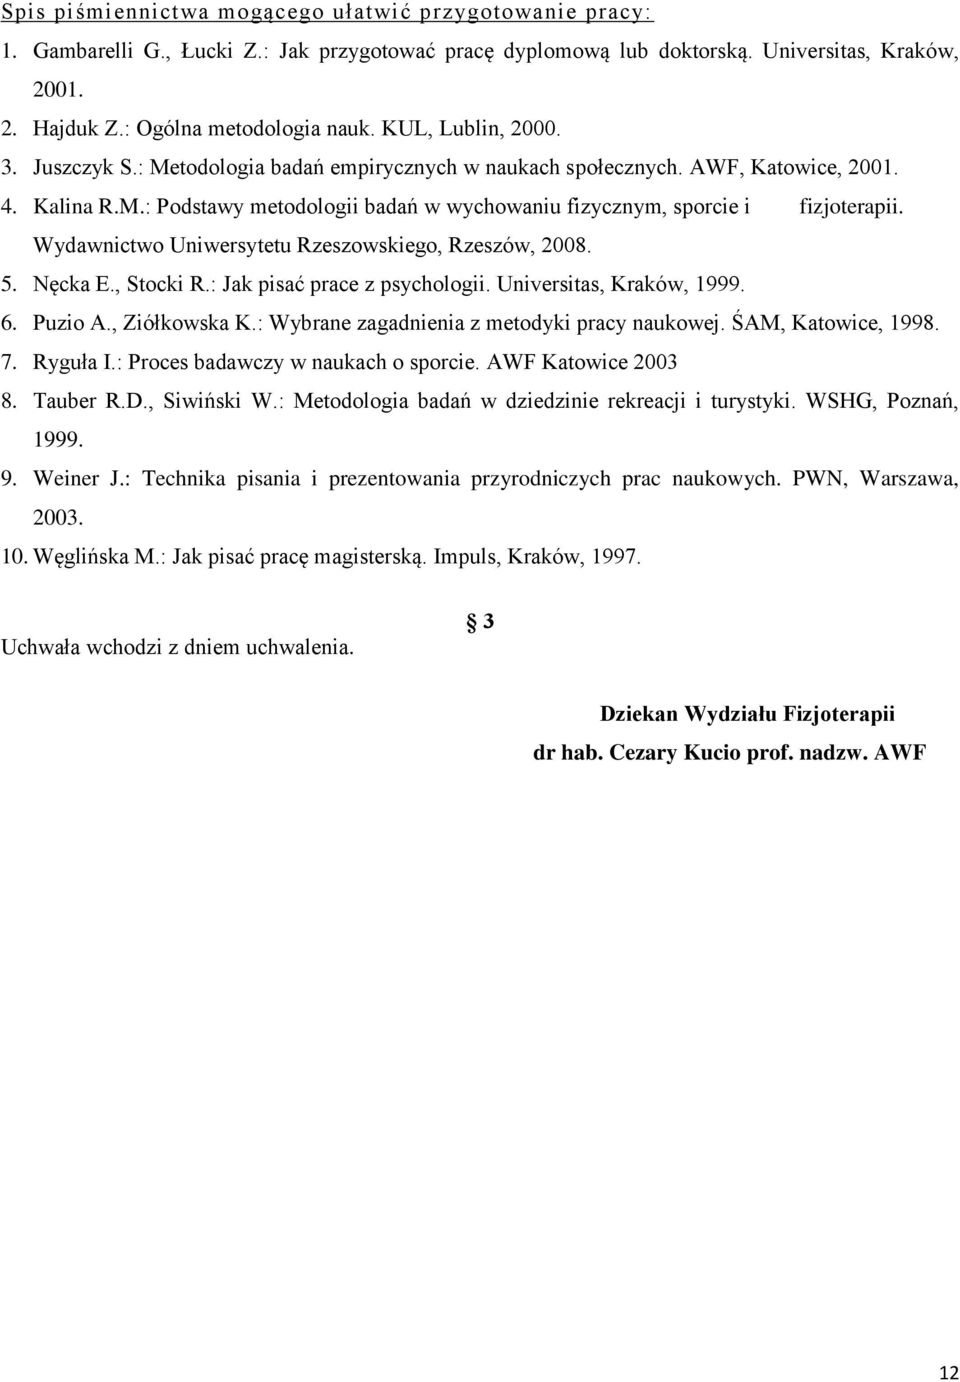 Wydawnictwo Uniwersytetu Rzeszowskiego, Rzeszów, 2008. 5. Nęcka E., Stocki R.: Jak pisać prace z psychologii. Universitas, Kraków, 1999. 6. Puzio A., Ziółkowska K.